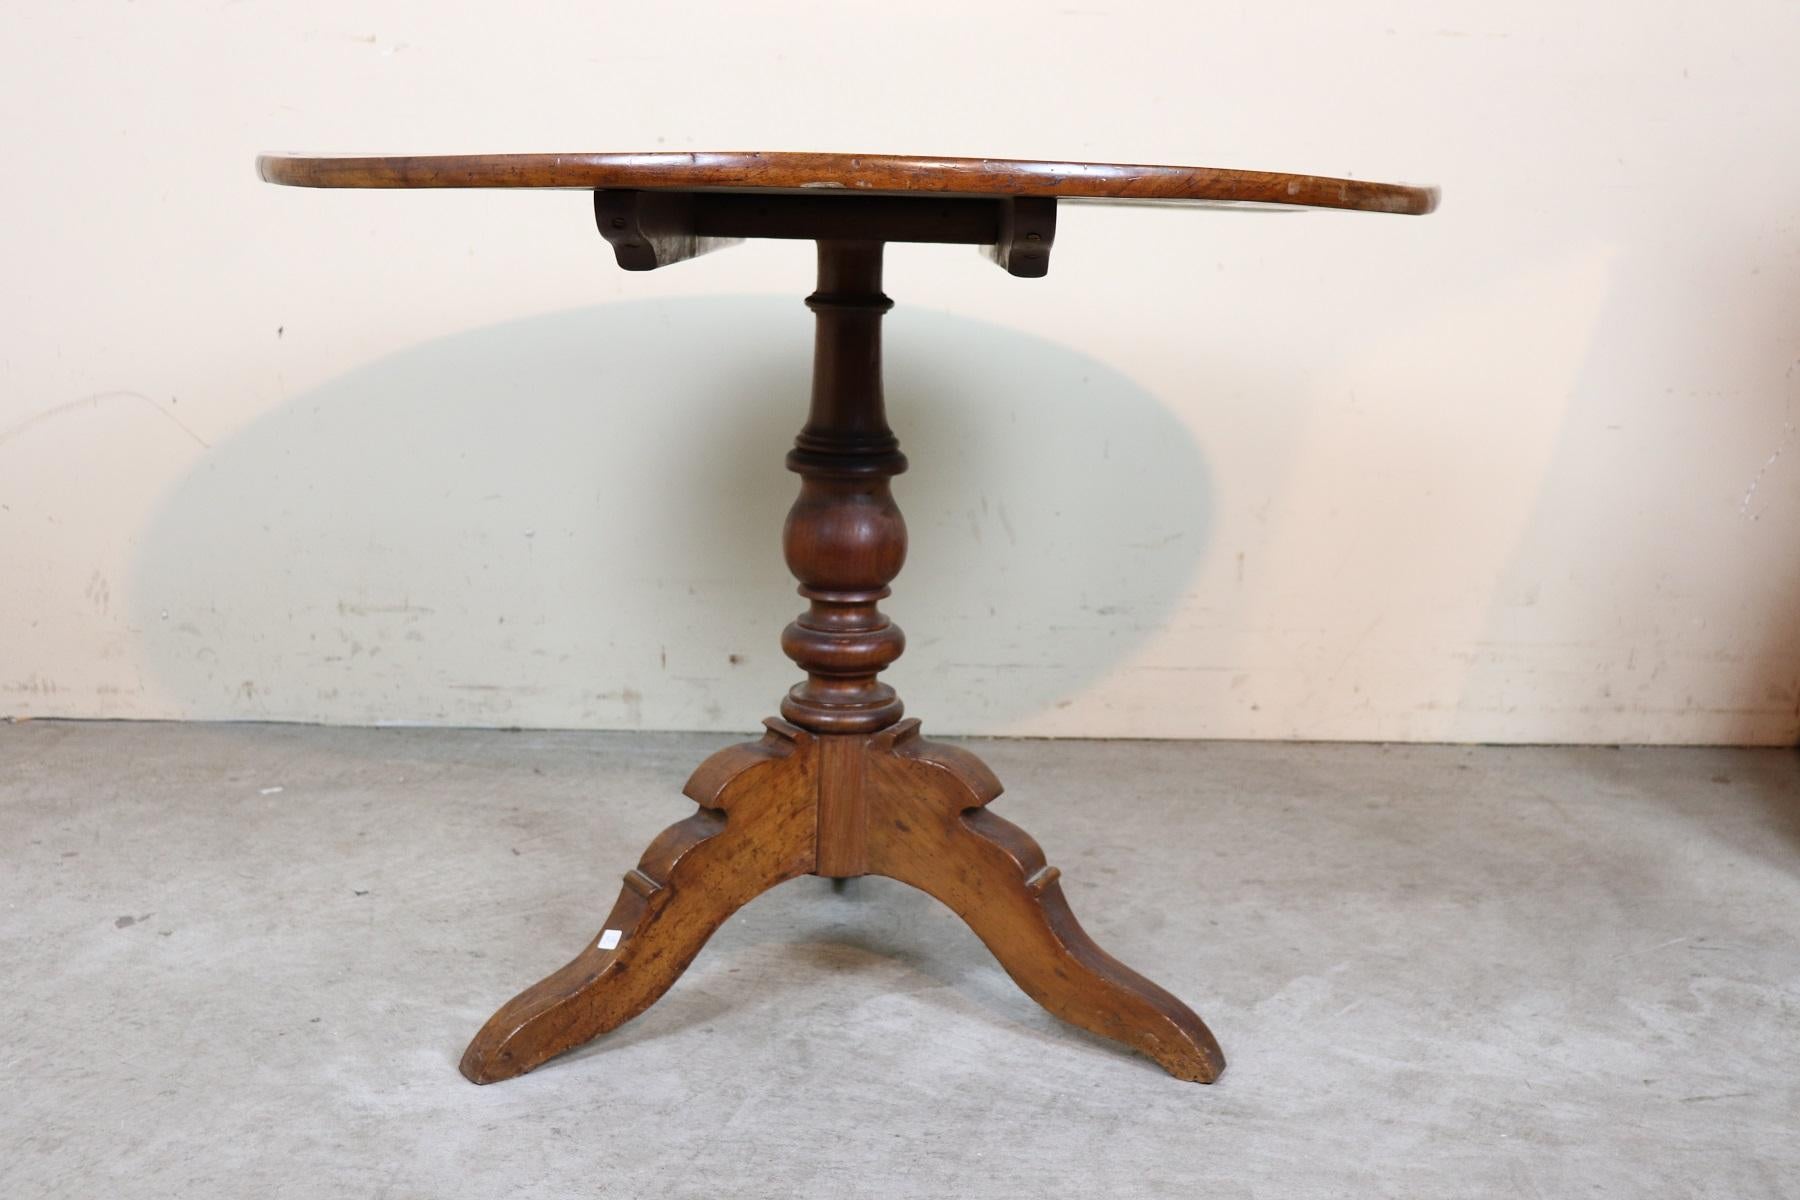 Schöne wichtige antike Tisch 1850s in Nussbaum. Der Plan zeigt wertvolle Intarsienarbeiten. Tisch mit elegantem gedrechseltem Mittelbein:: die Platte zeichnet sich durch ein schmales und bequemes Band an der Sitzfläche aus. Die Besonderheit dieses